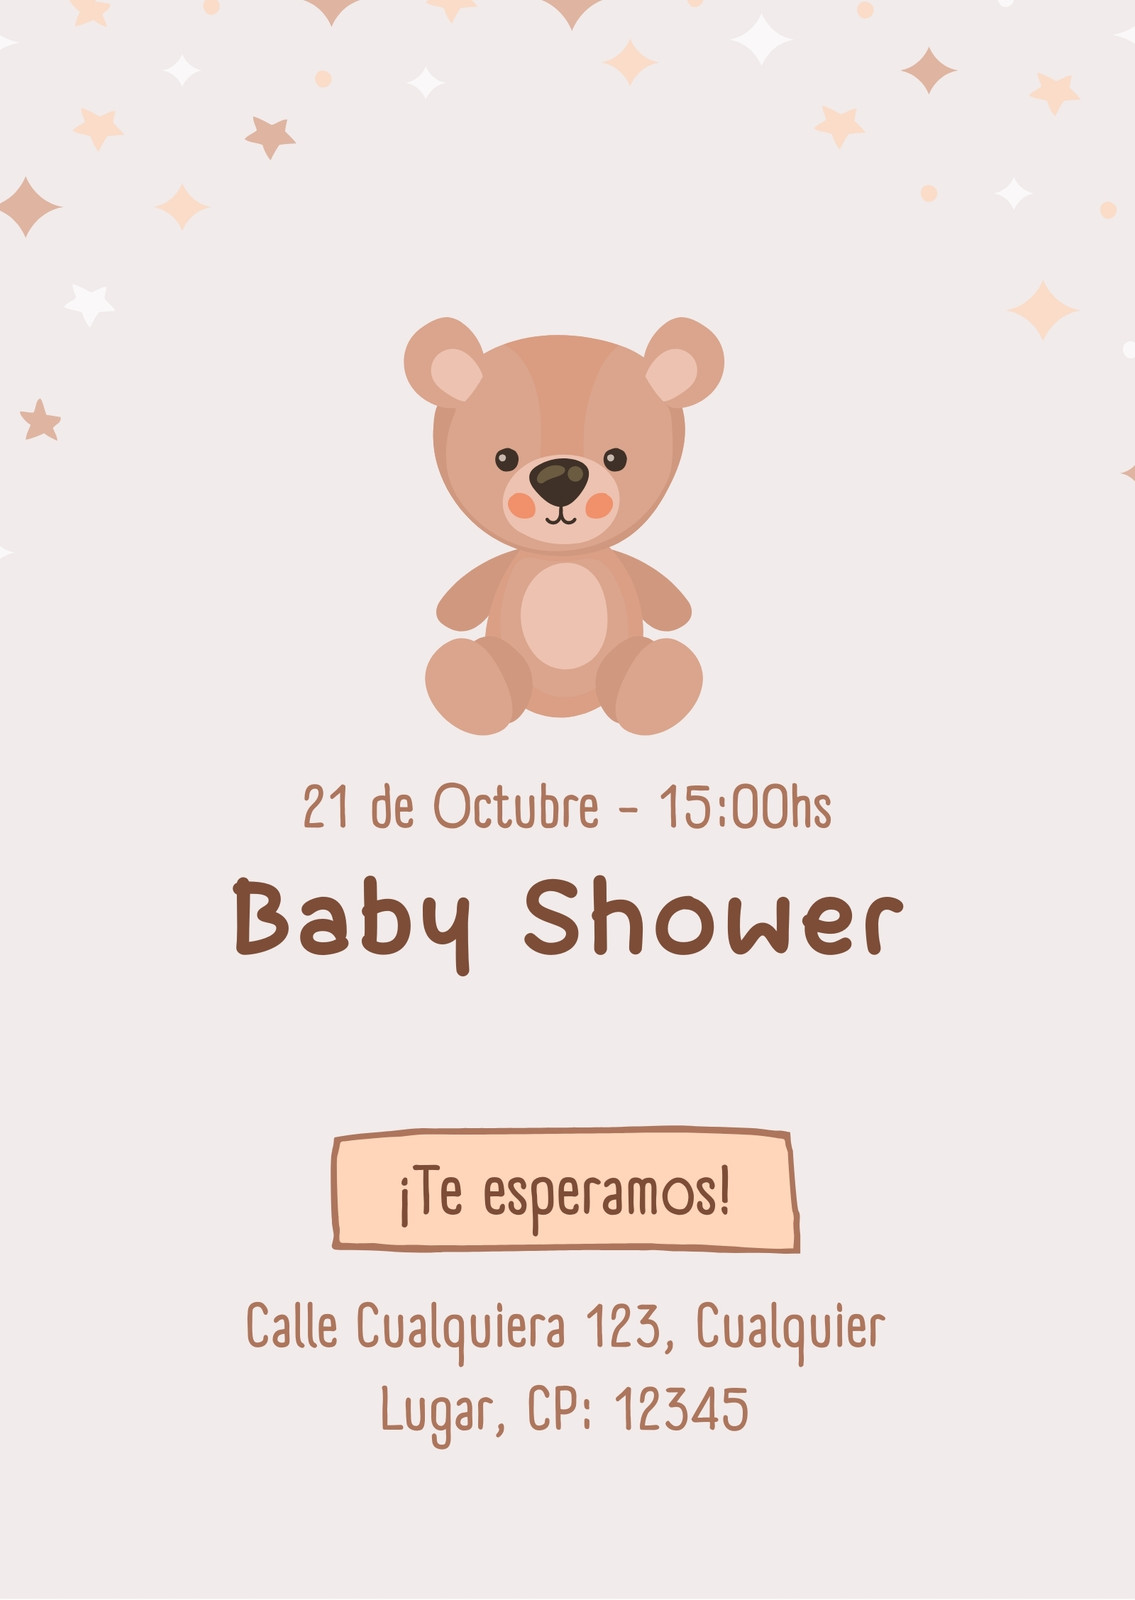 Plantillas de invitación a Baby Shower editables | Canva